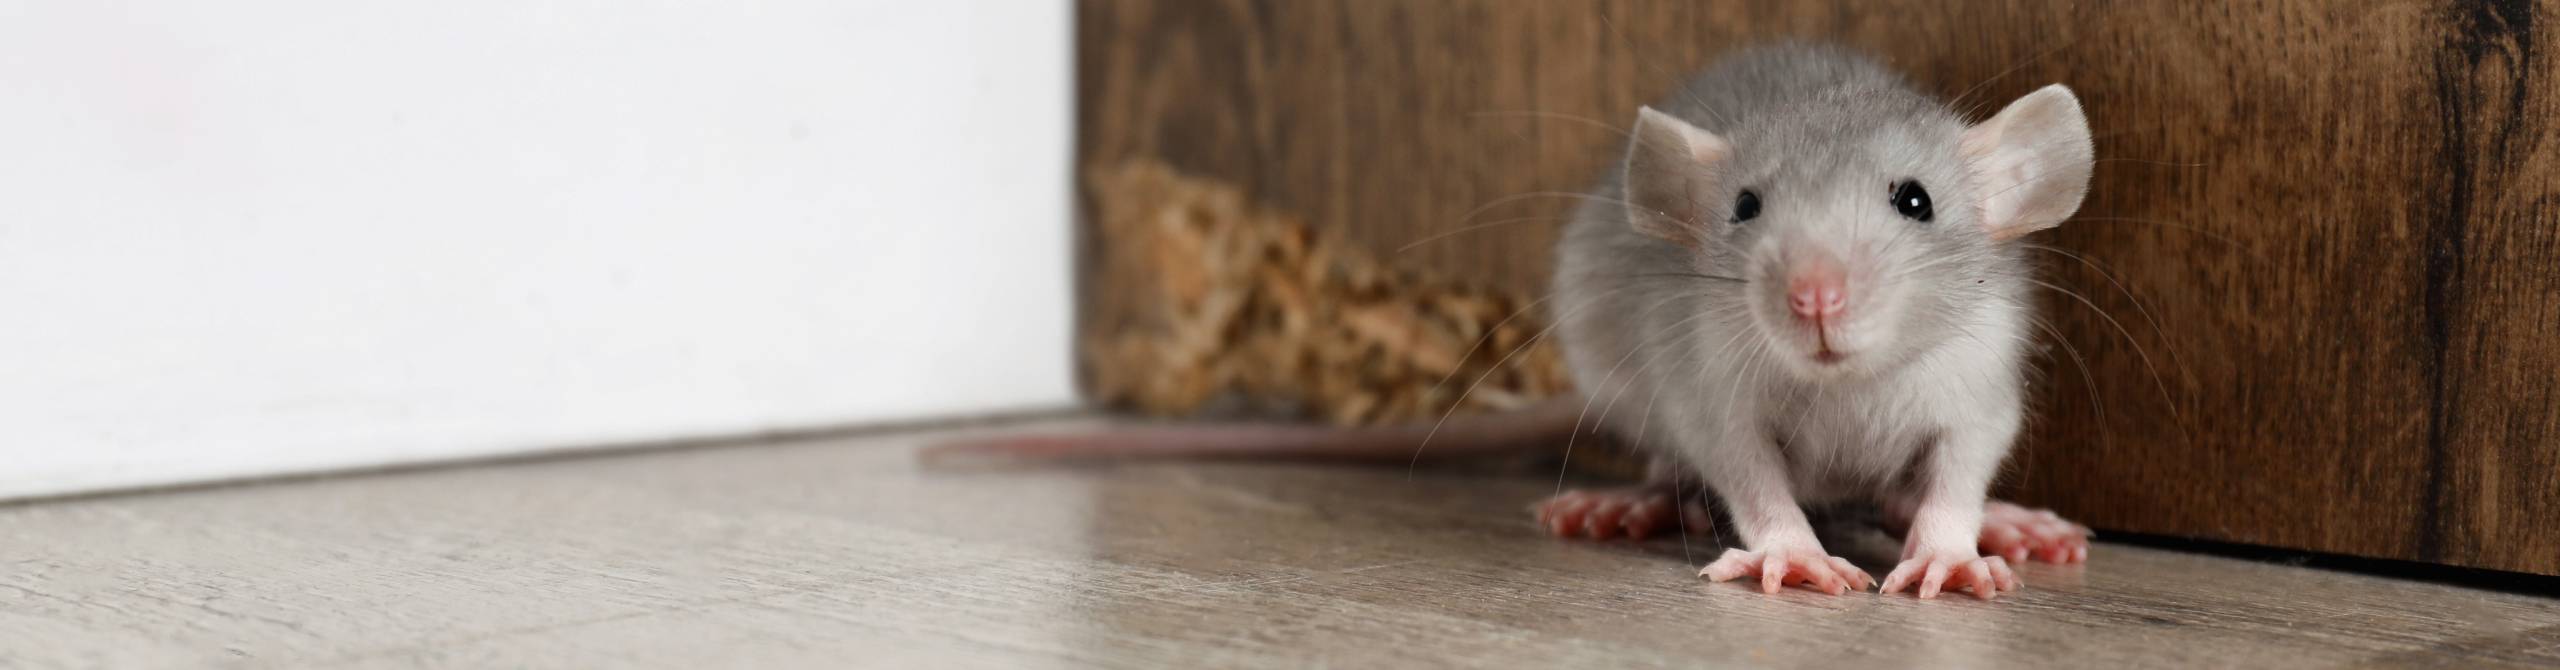 bild på en råtta